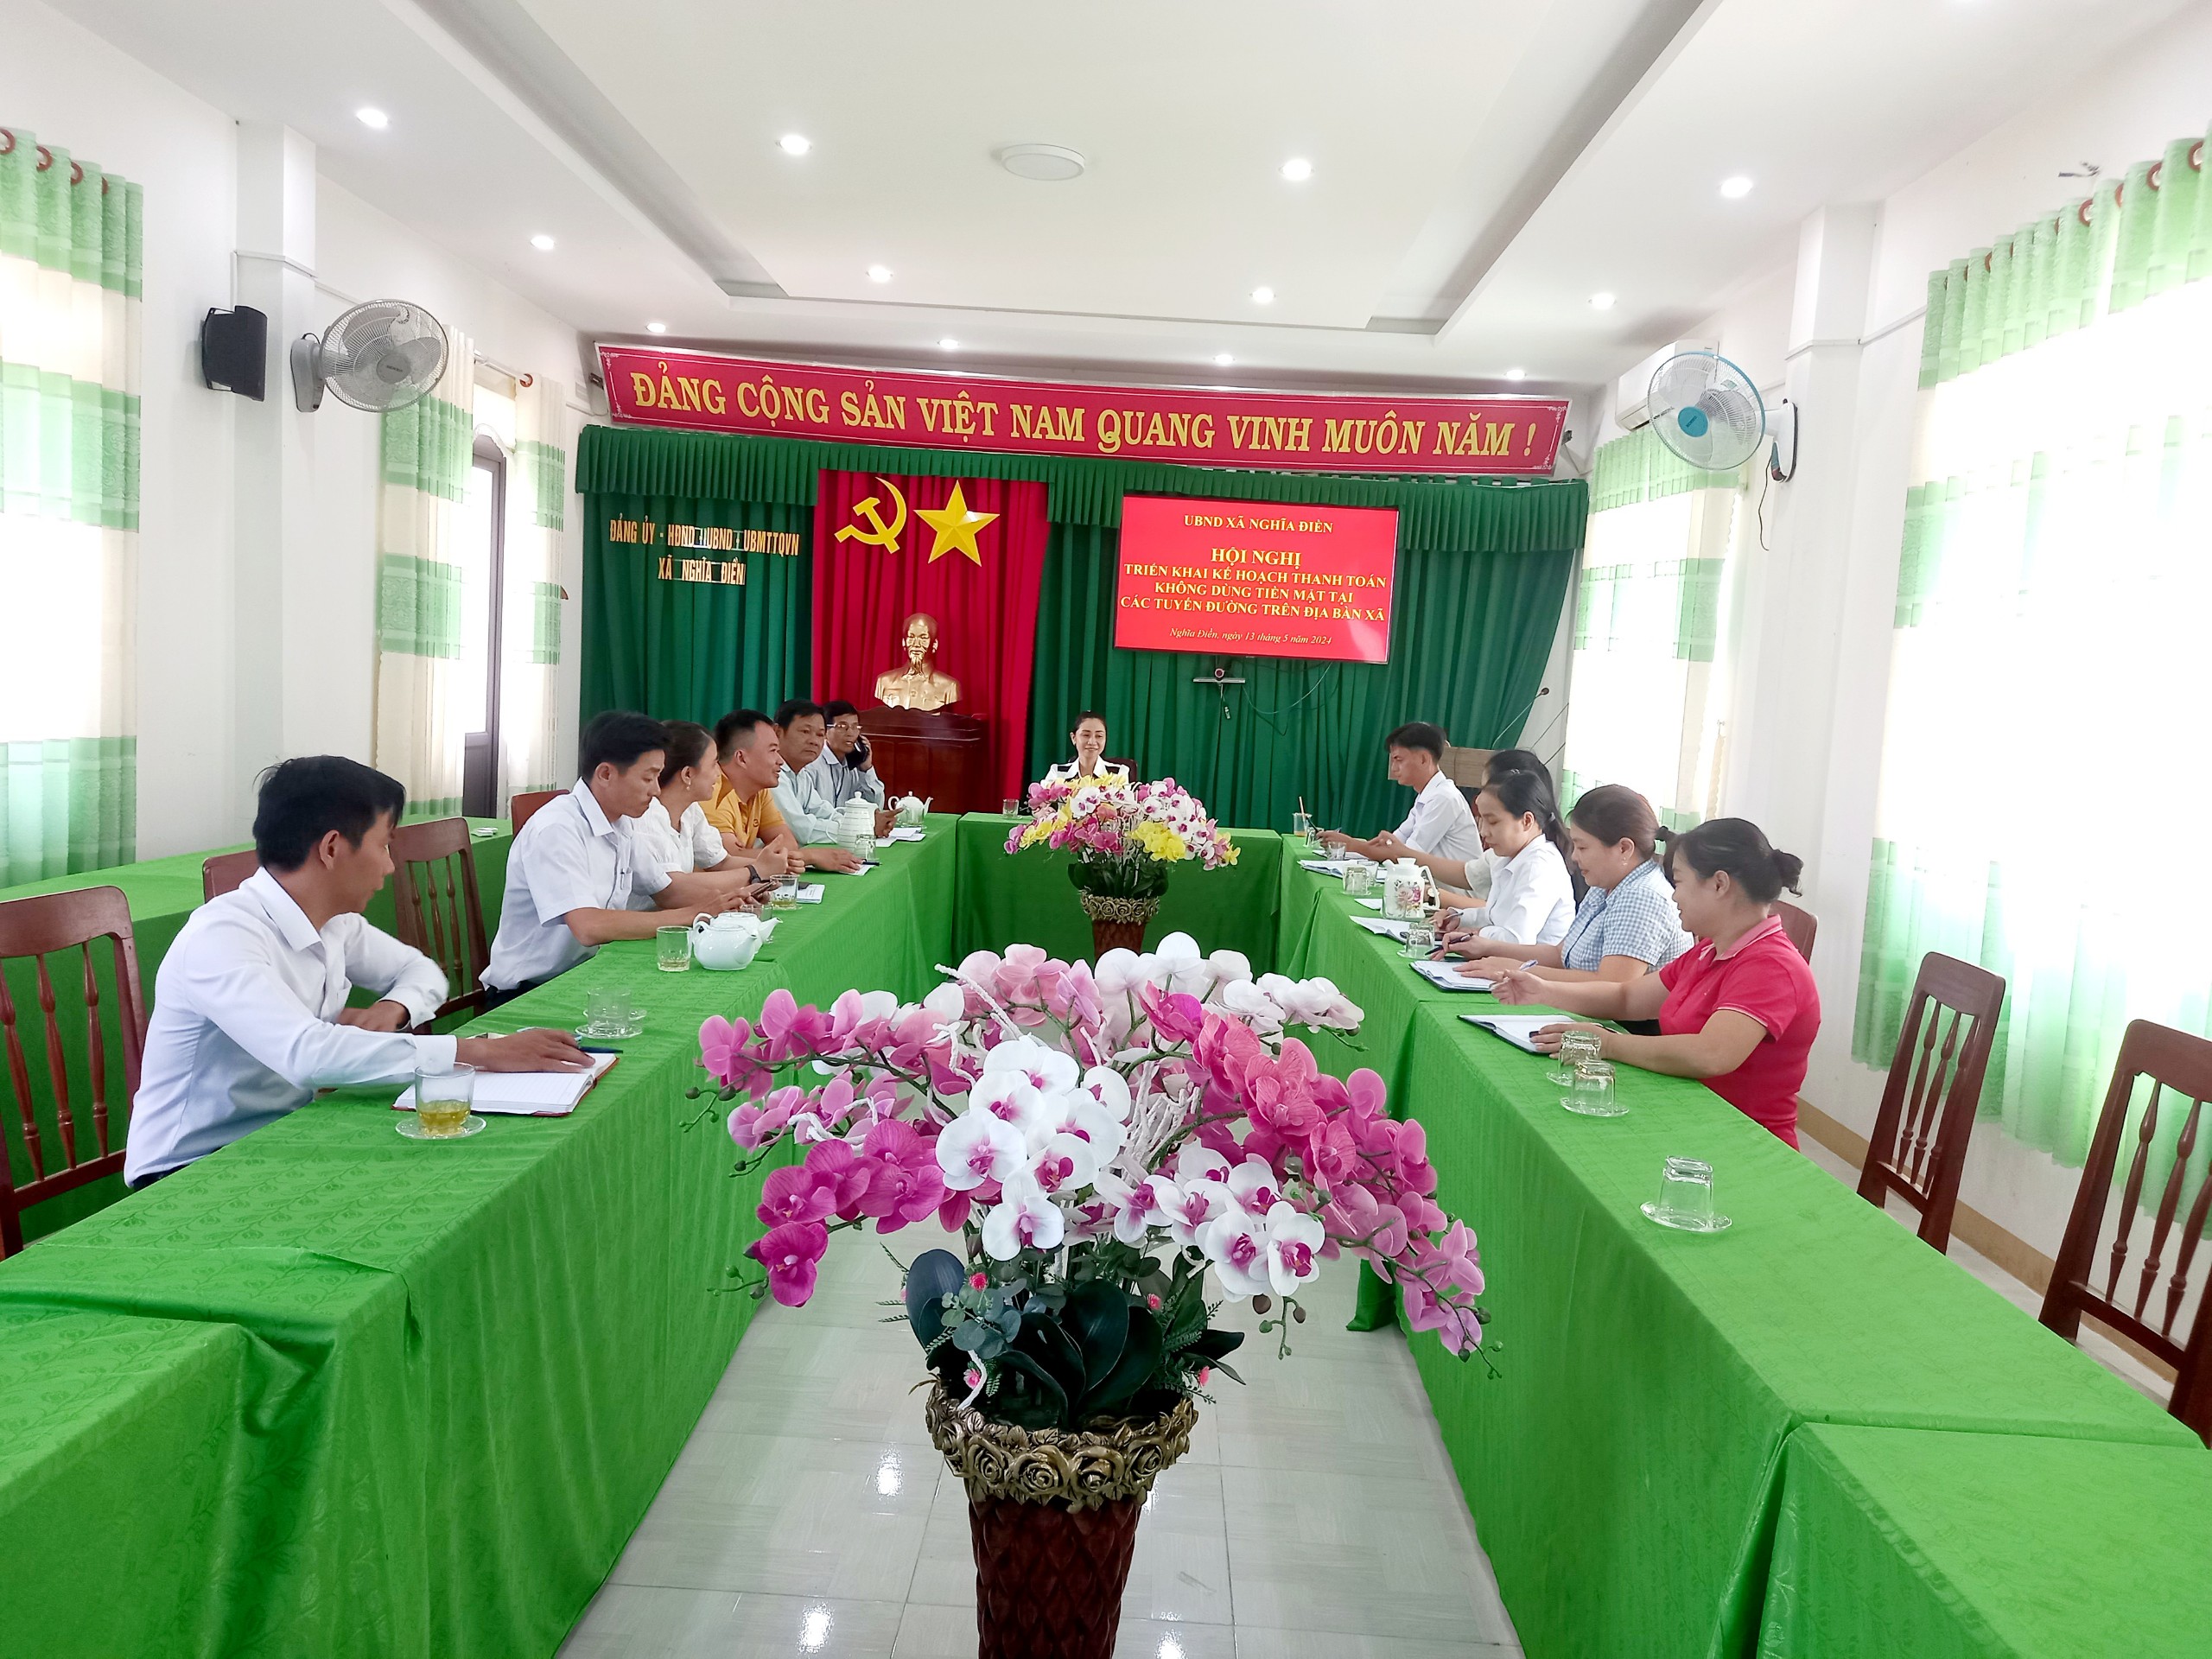 Hội nghị triển khai Kế hoạch Thanh toán không dùng tiền mặt tại các tuyến đường trên địa bàn xã Nghĩa Điền